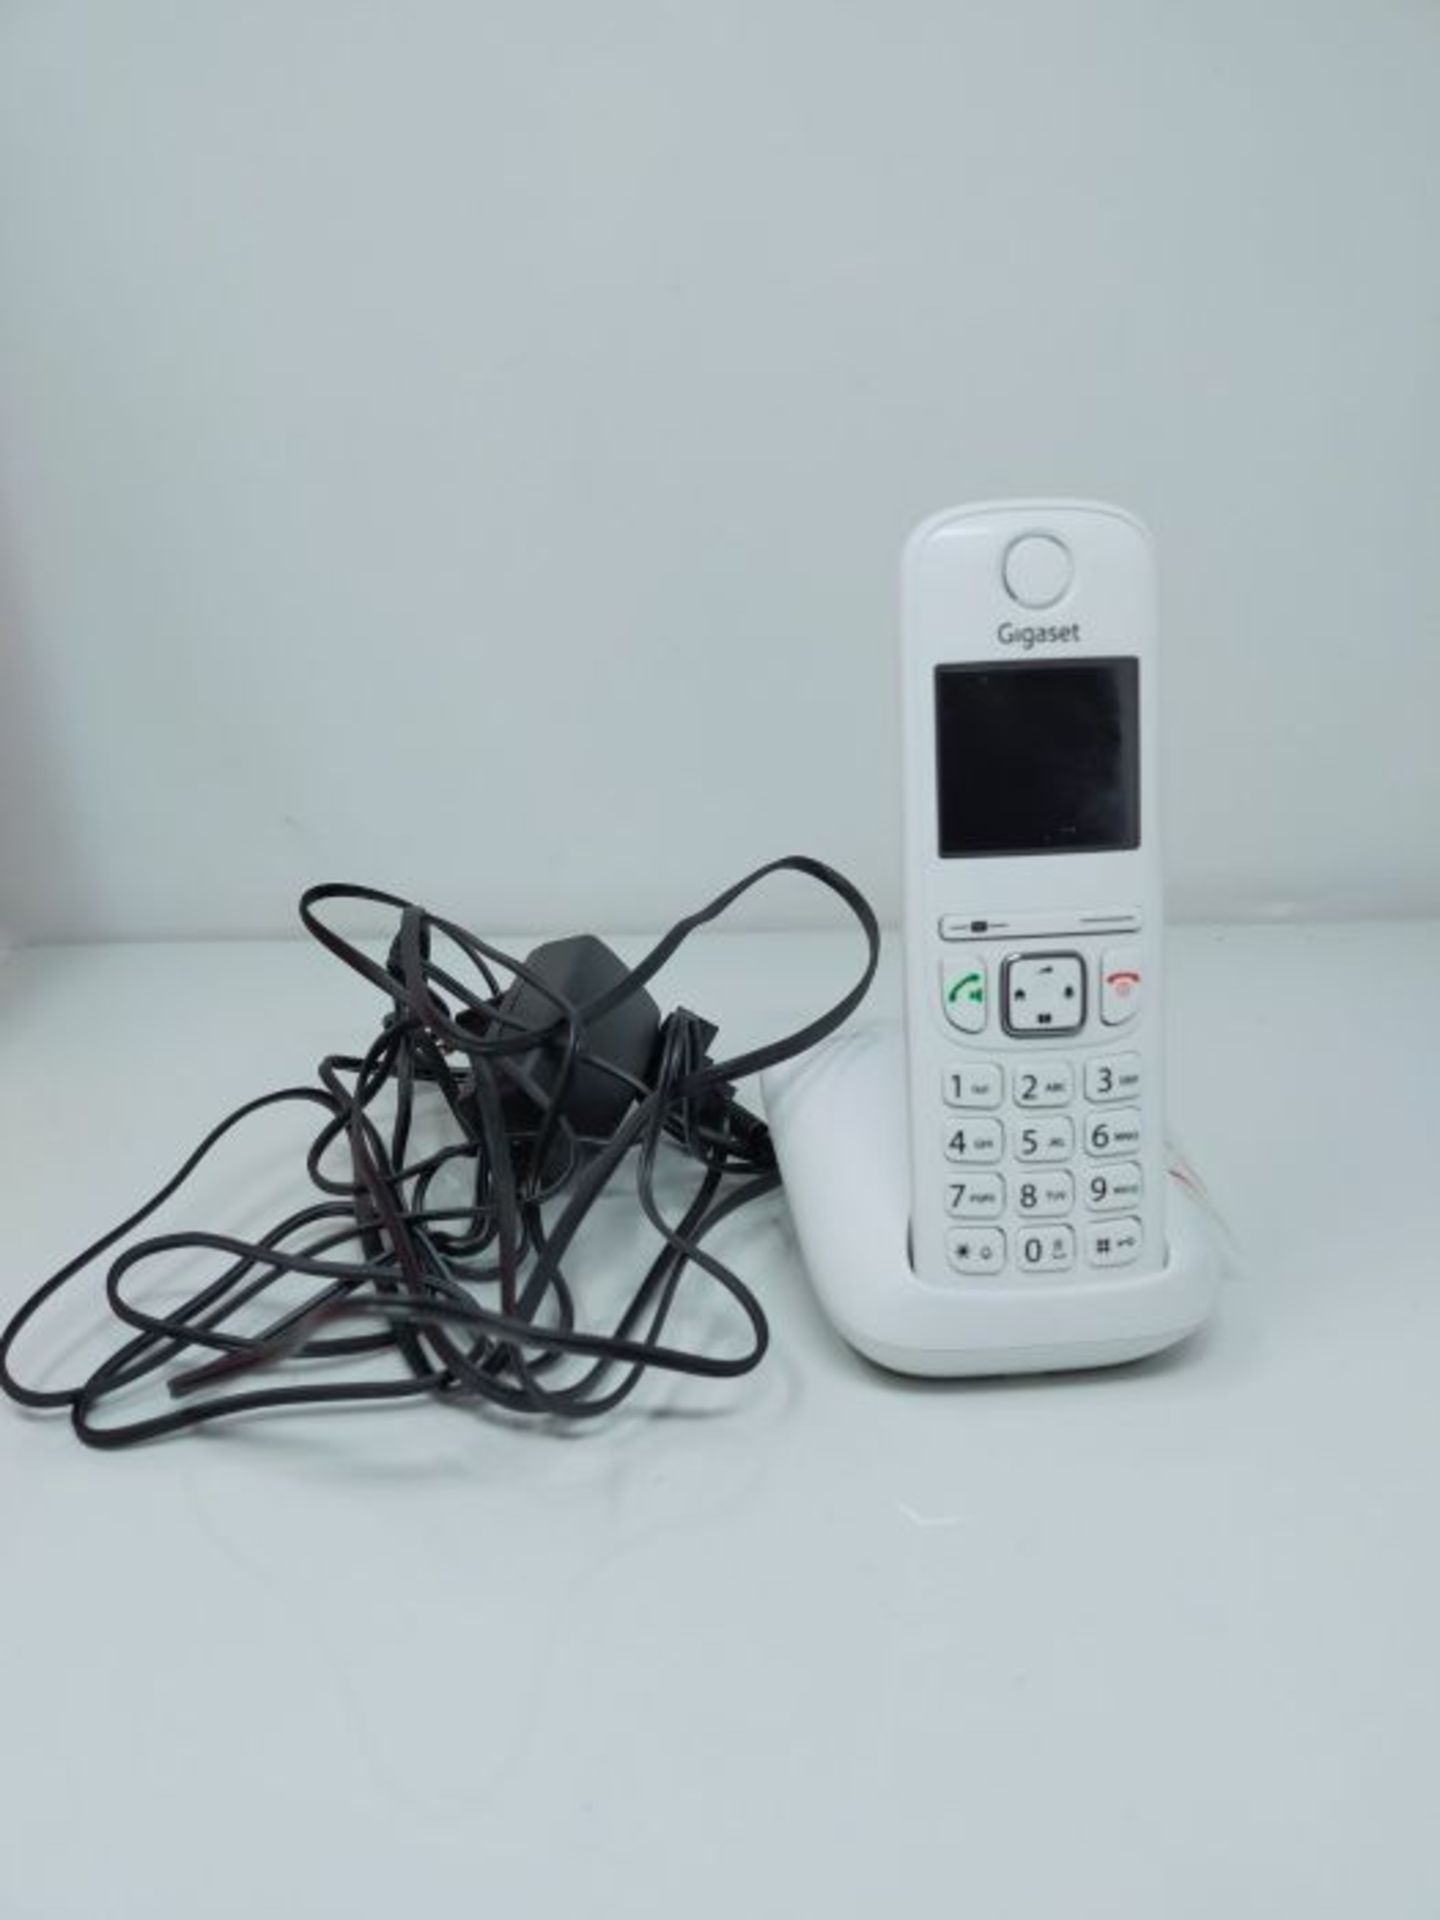 Gigaset A690, Schnurloses Telefon - großes, kontrastreiches Display - brillante Audio - Image 2 of 2